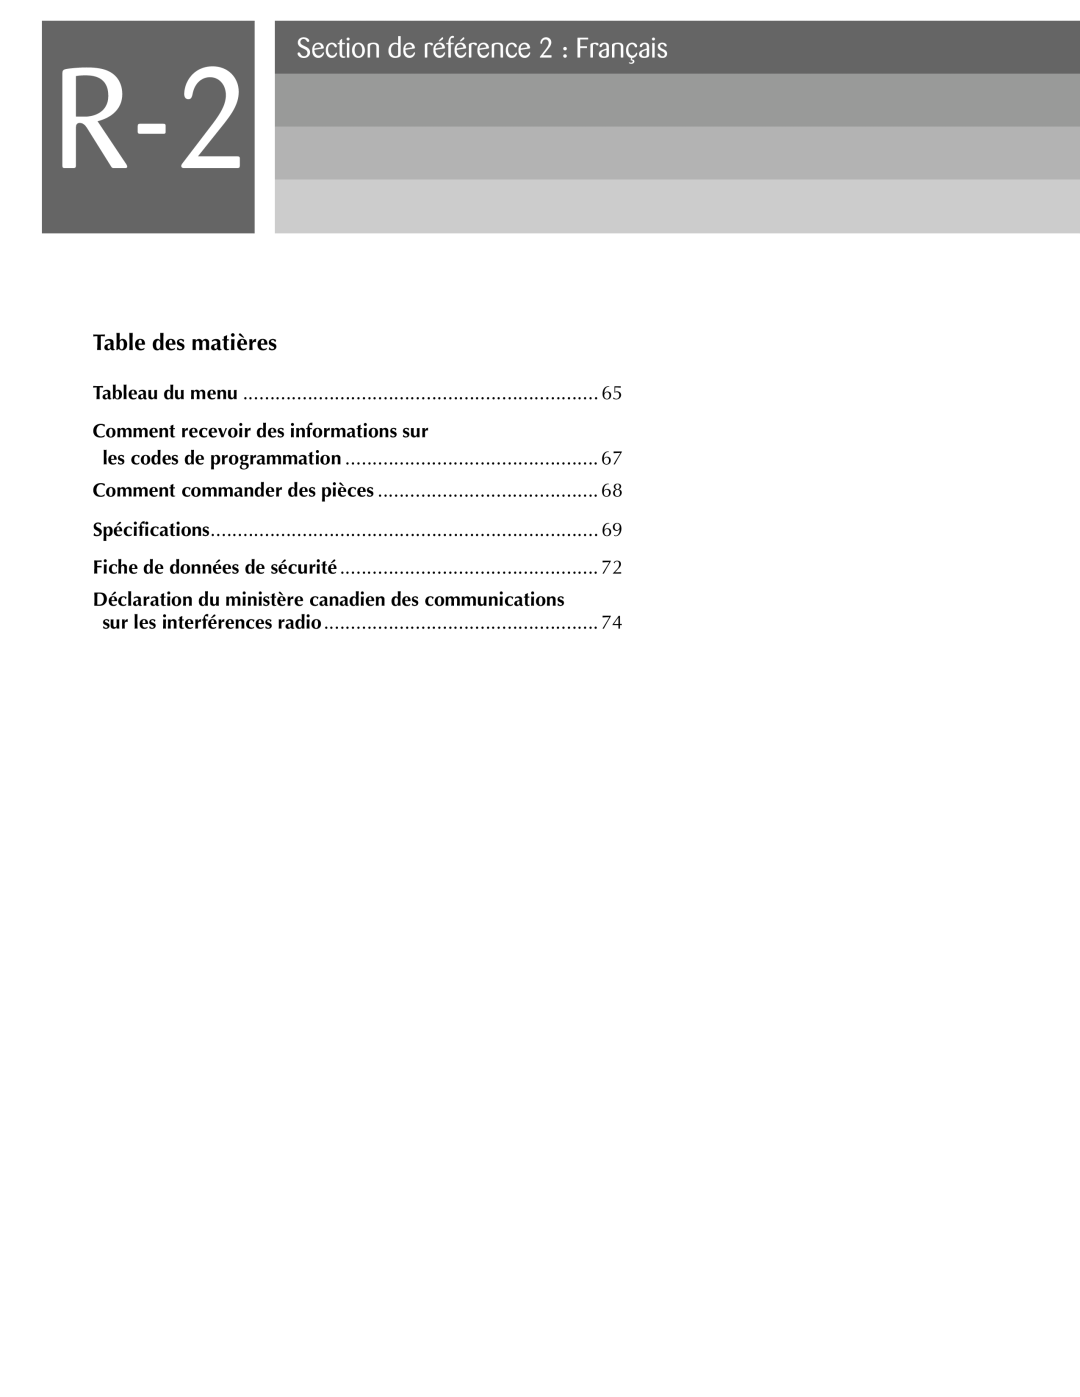 Oki ML590 manual Section de référence 2 Français, Table des matières, Déclaration du ministère canadien des communications 